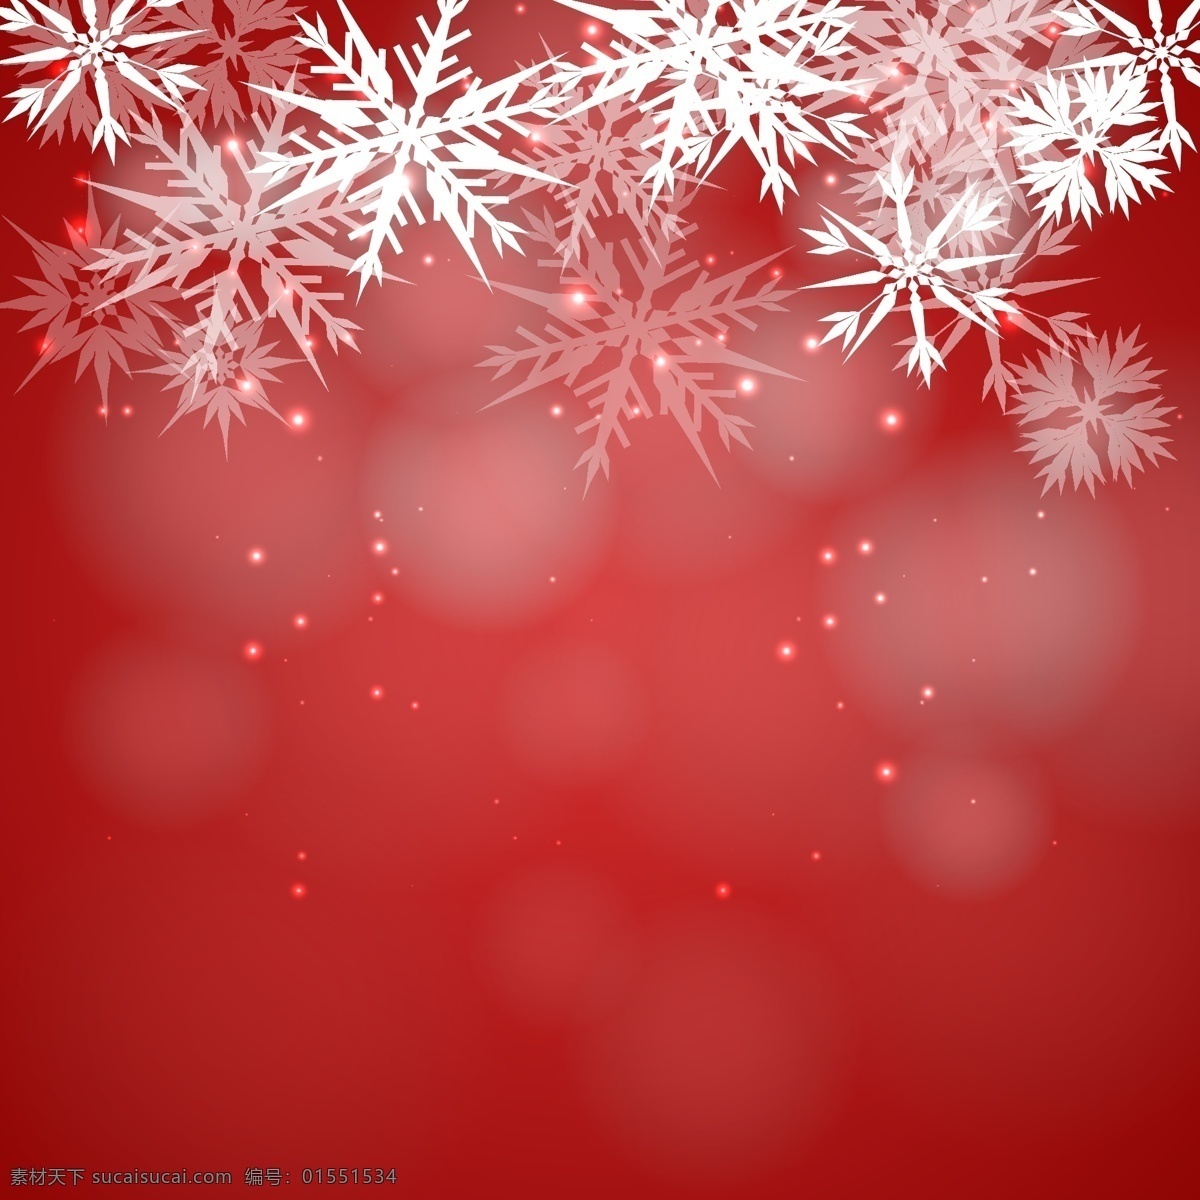 红色 背景 虚化 雪花 圣诞节 下雪了 圣诞快乐 冬天快乐 圣诞红 红色背景 庆祝节日 灯光 背景虚化 节日快乐 圣诞灯 冷 冬天的背景 季节的问候